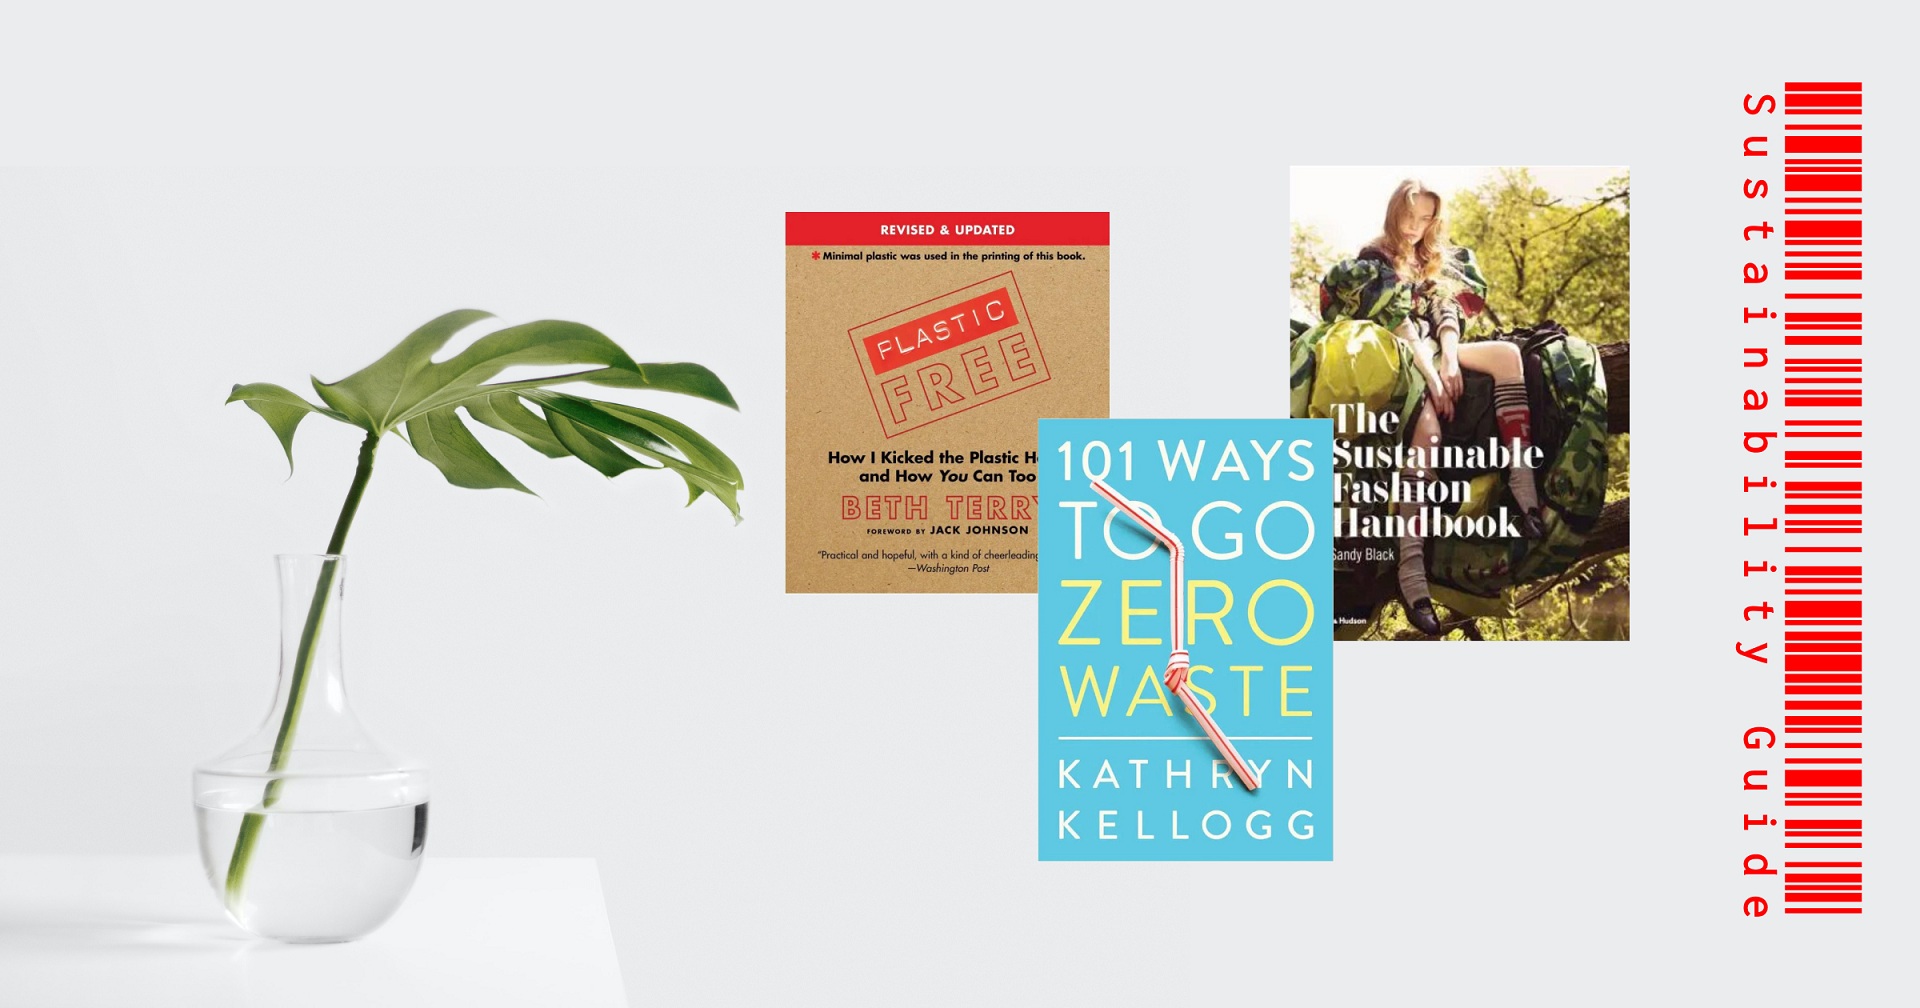 Sustainability Guide: 10 книг об осознанном потреблении, которые стоит прочесть каждому-Фото 2